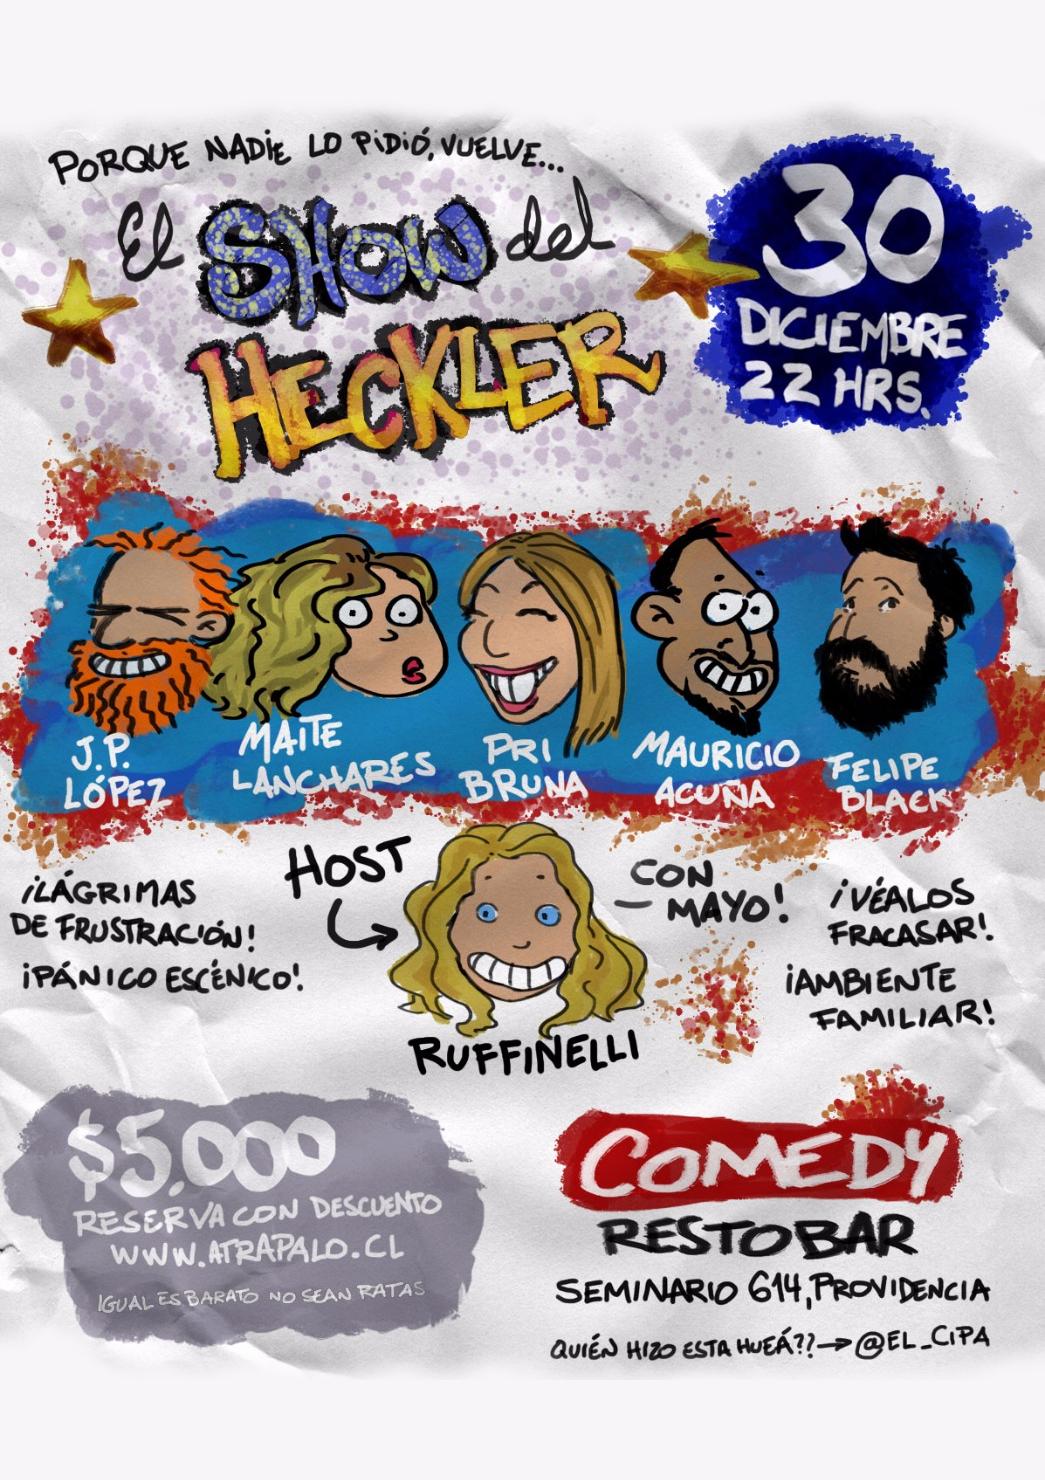 El Show del Heckler - J.P López, Maite Lanchares, Felipe Black y más